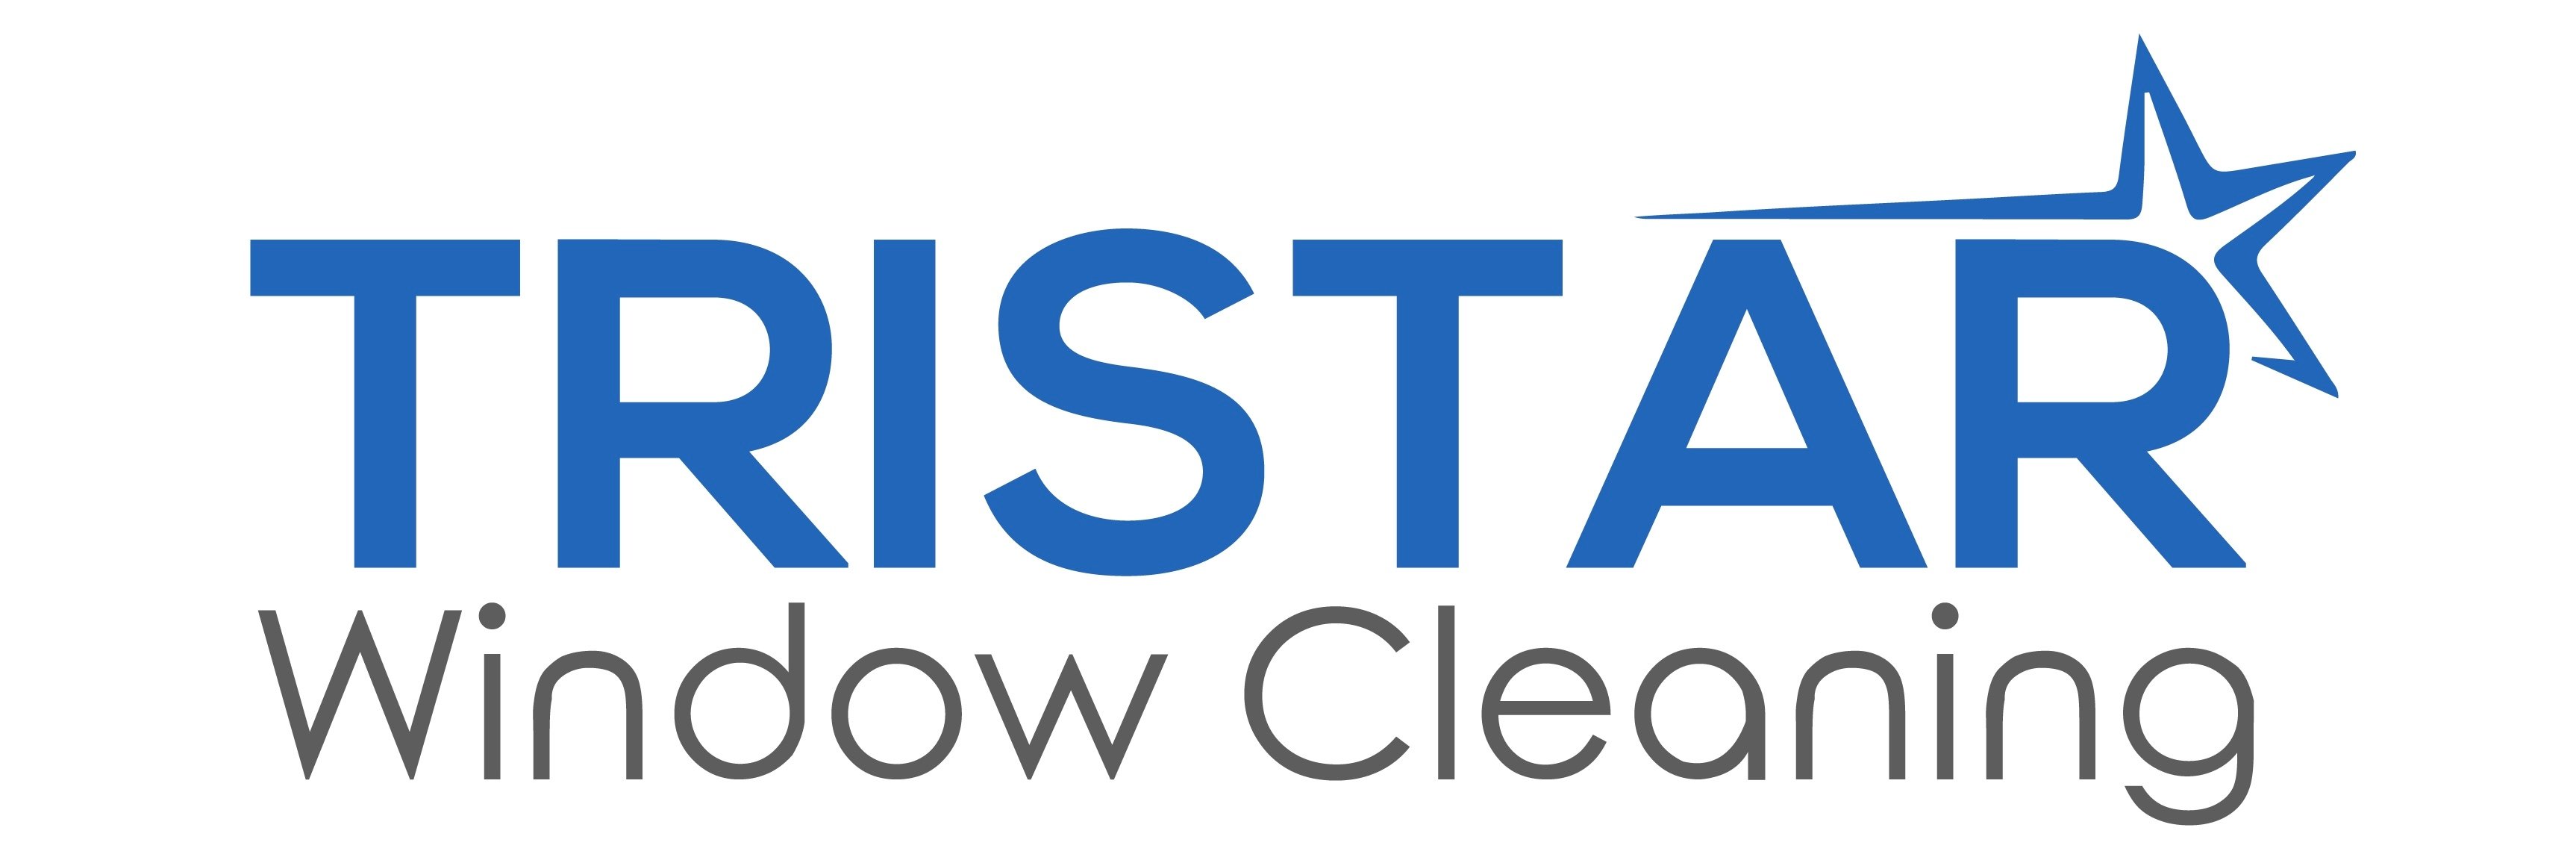 Tristar Window Cleaning, LLC Logo